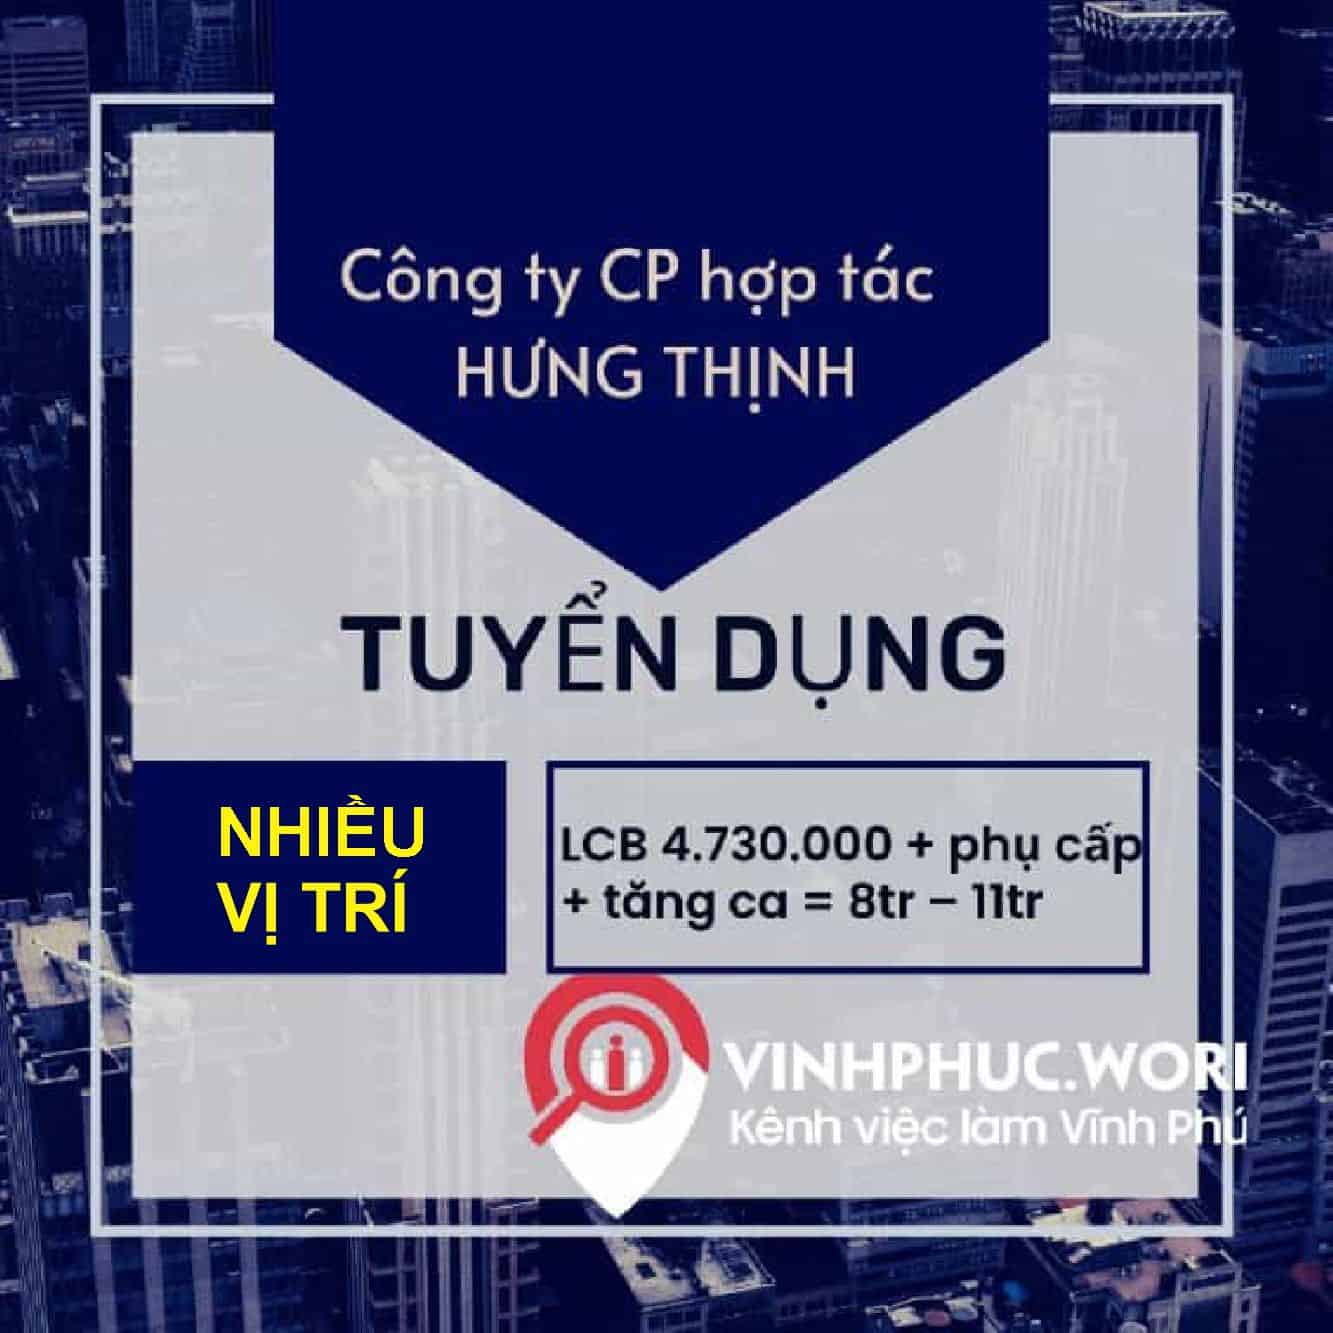 Cong Ty Co Phan Hop Tac Hung Thinh Tuyen Dung Lao Dong Pho Thong Va Nhieu Vi Tri Thang 8 2